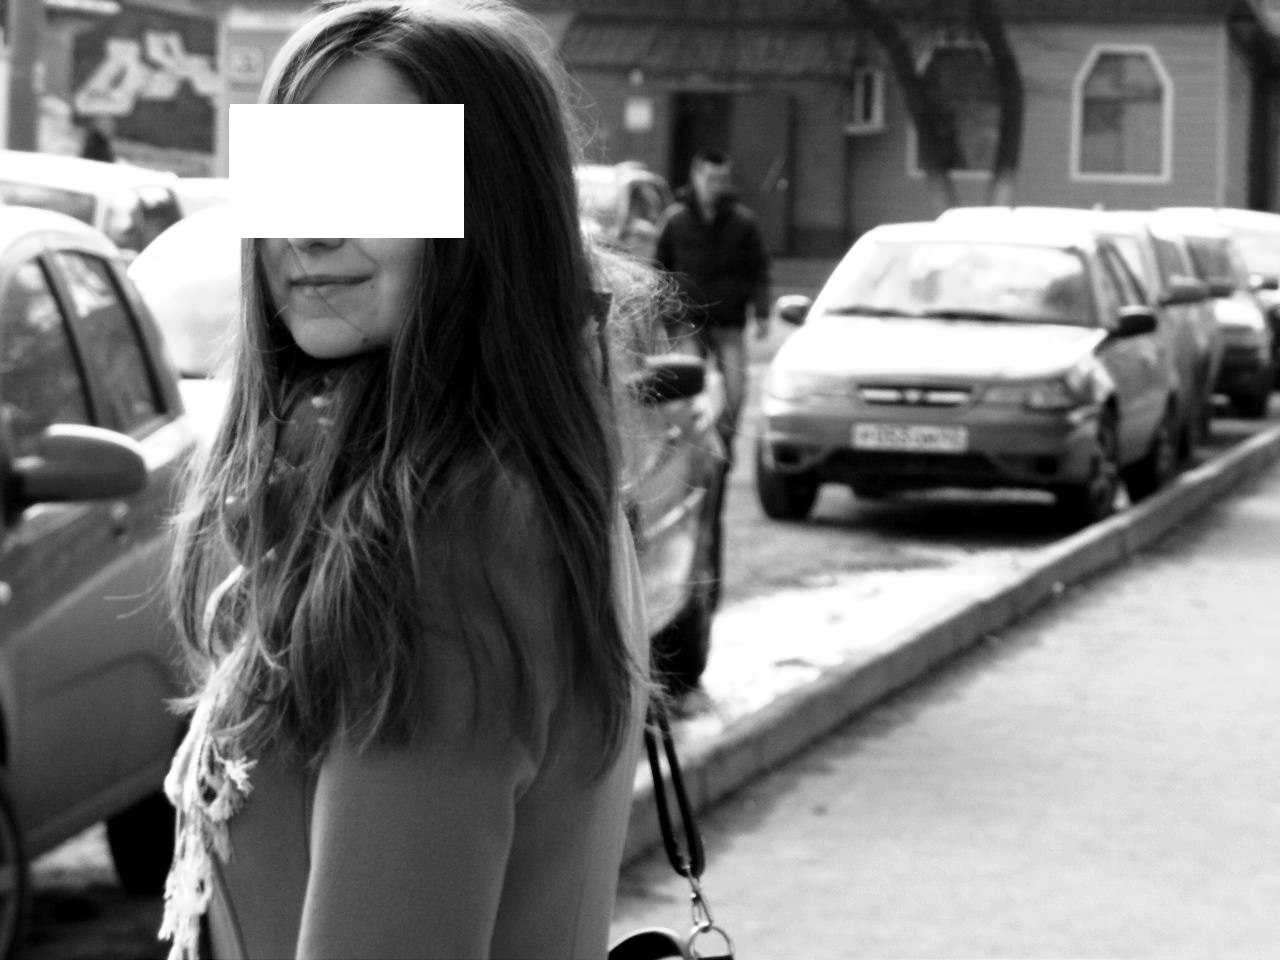 В Кирове в подъезде зарезали девушку: что известно об убийстве и почему в соцсетях началась паника